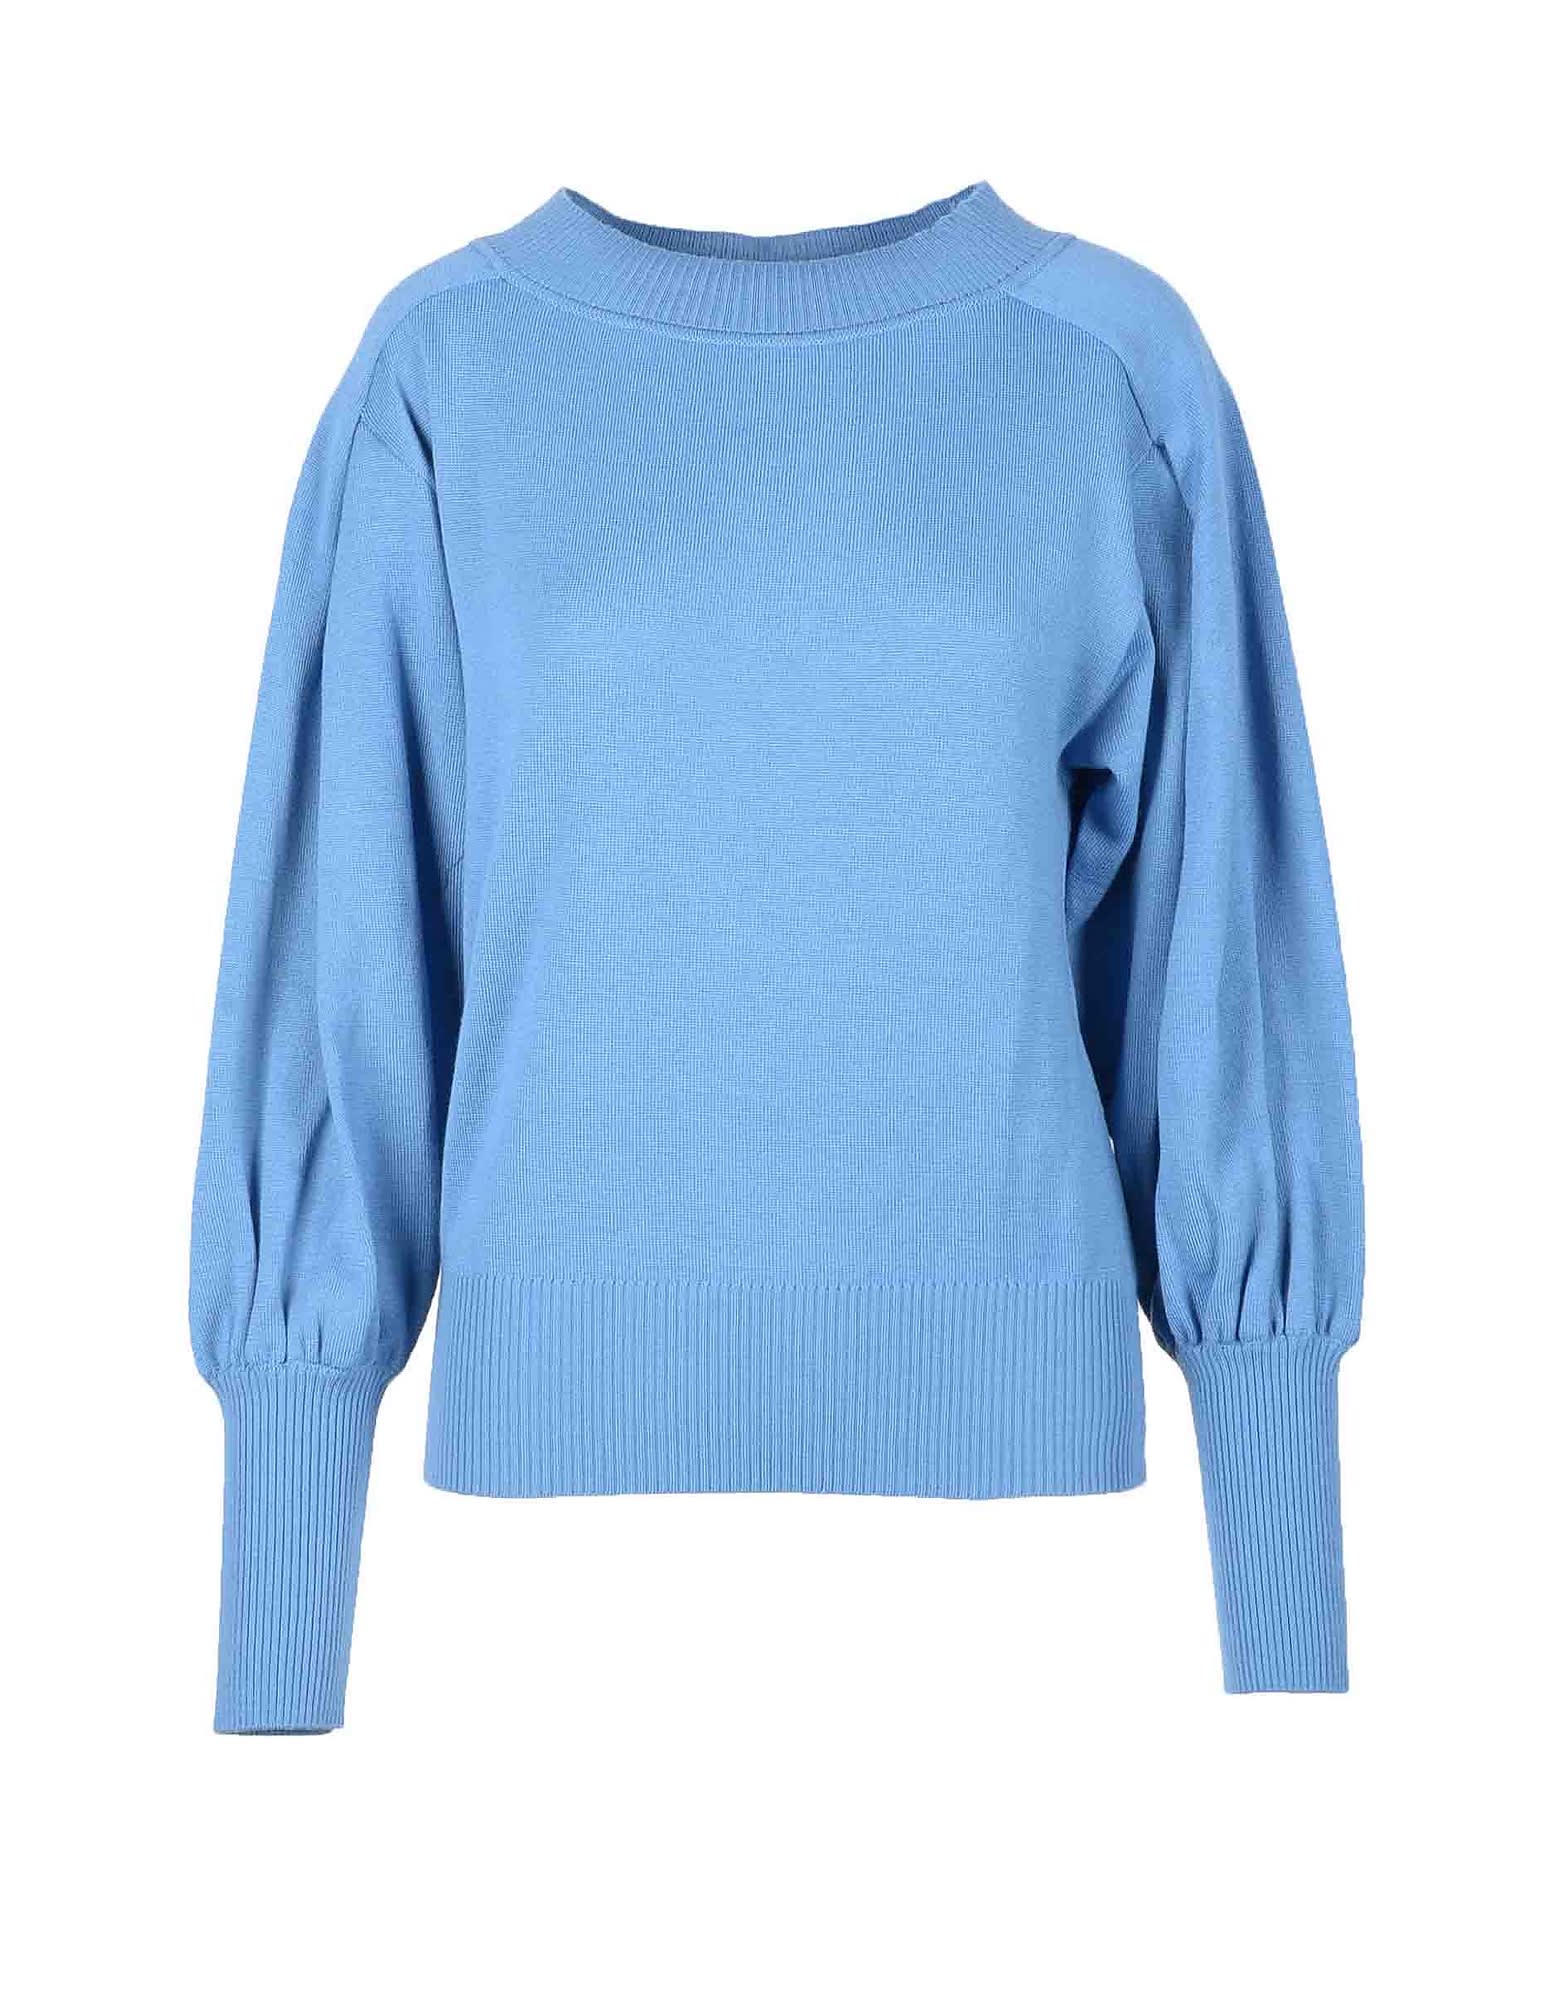 Alberta Ferretti Womens Light Blue Sweater